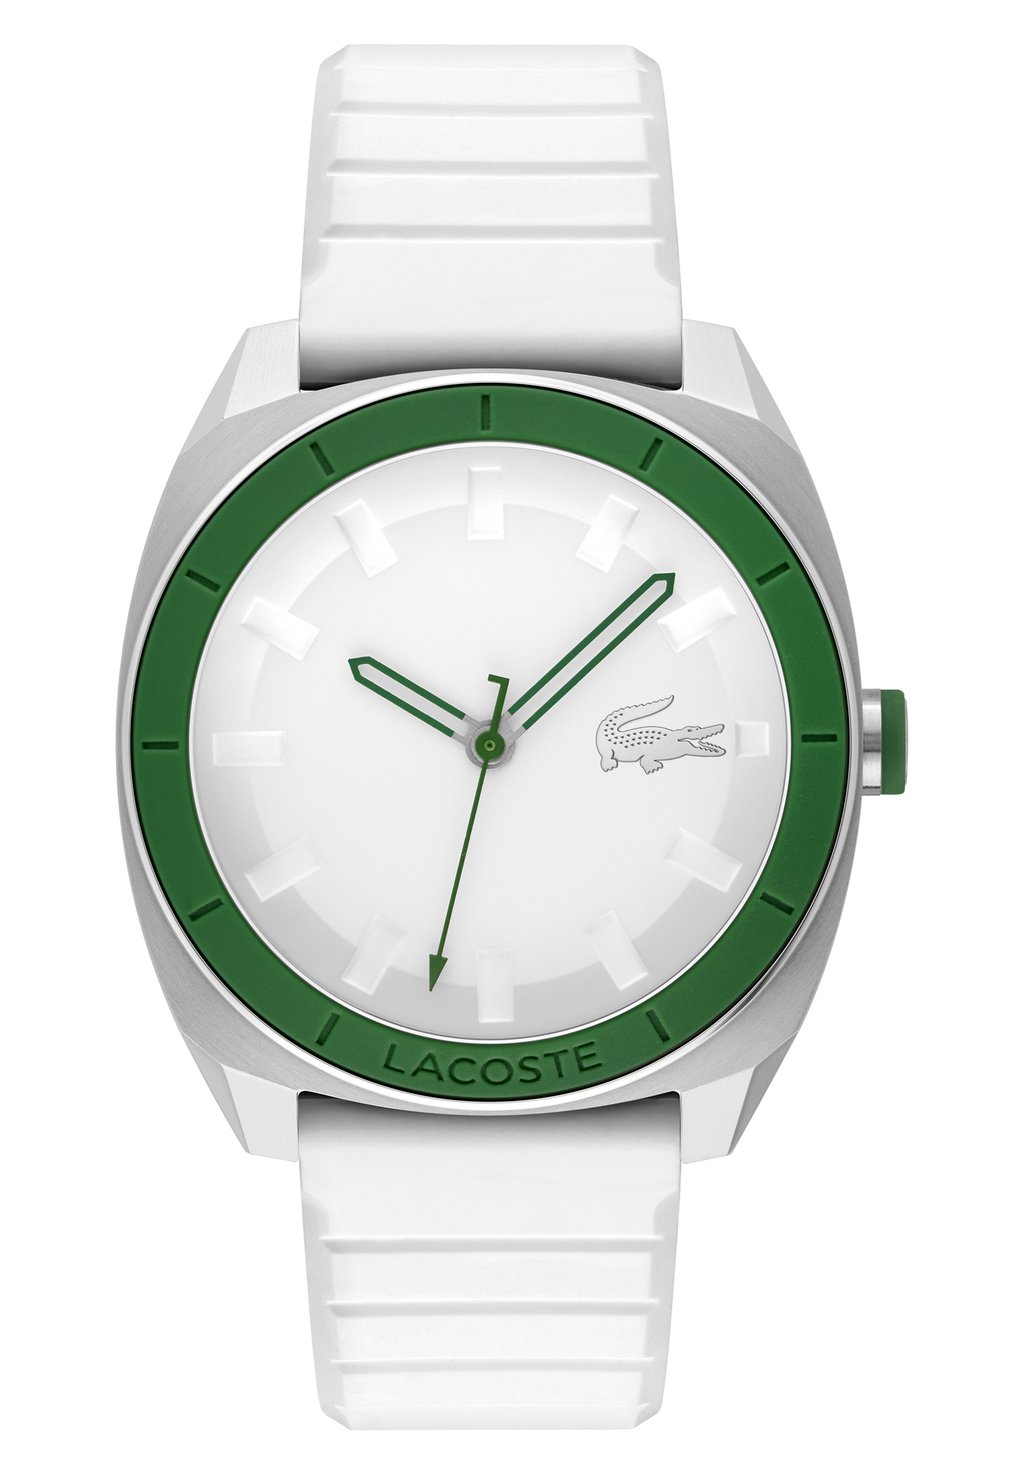 Часы Sprint Lacoste, цвет silber/grün/weiss weiß